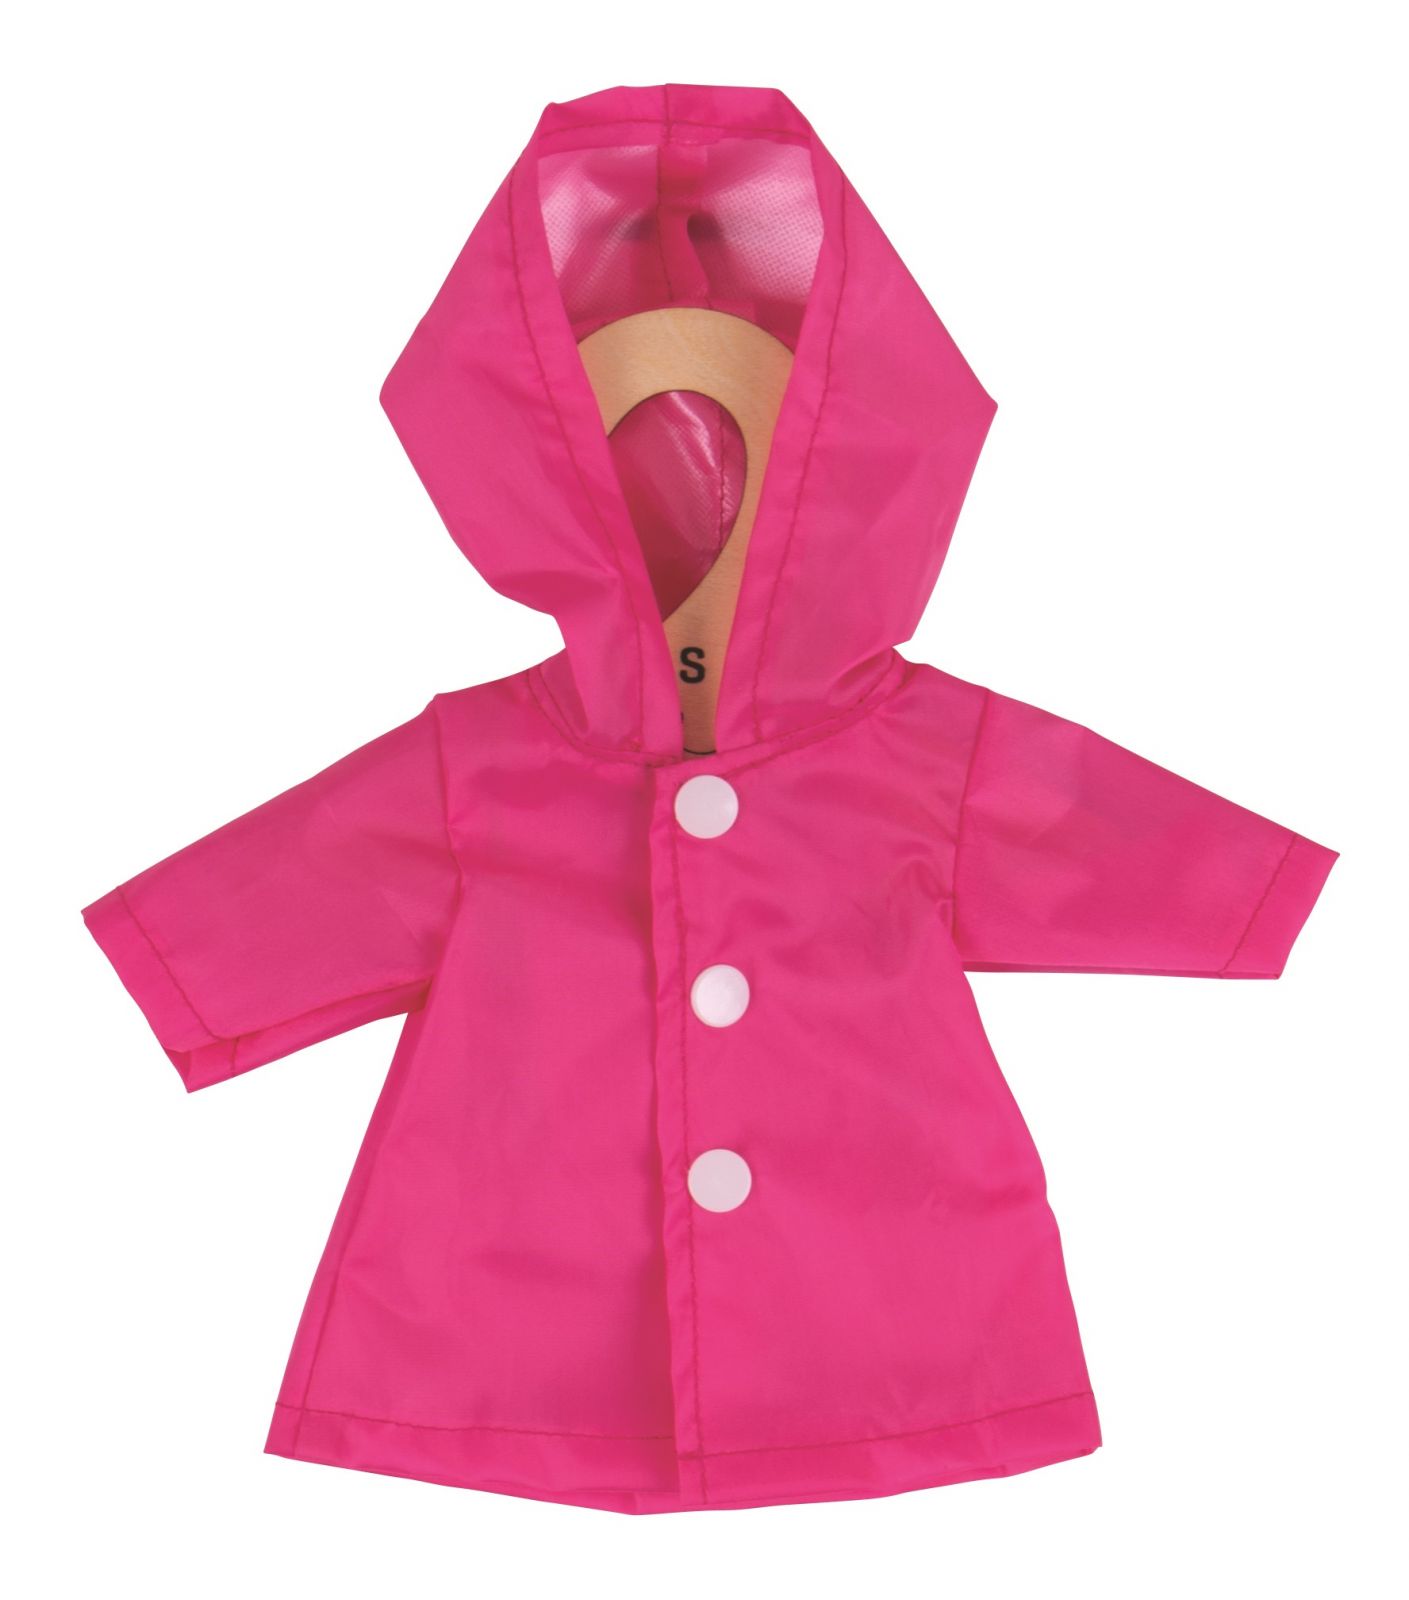 Dřevěné hračky Bigjigs Toys Růžový kabátek pro panenku 28 cm